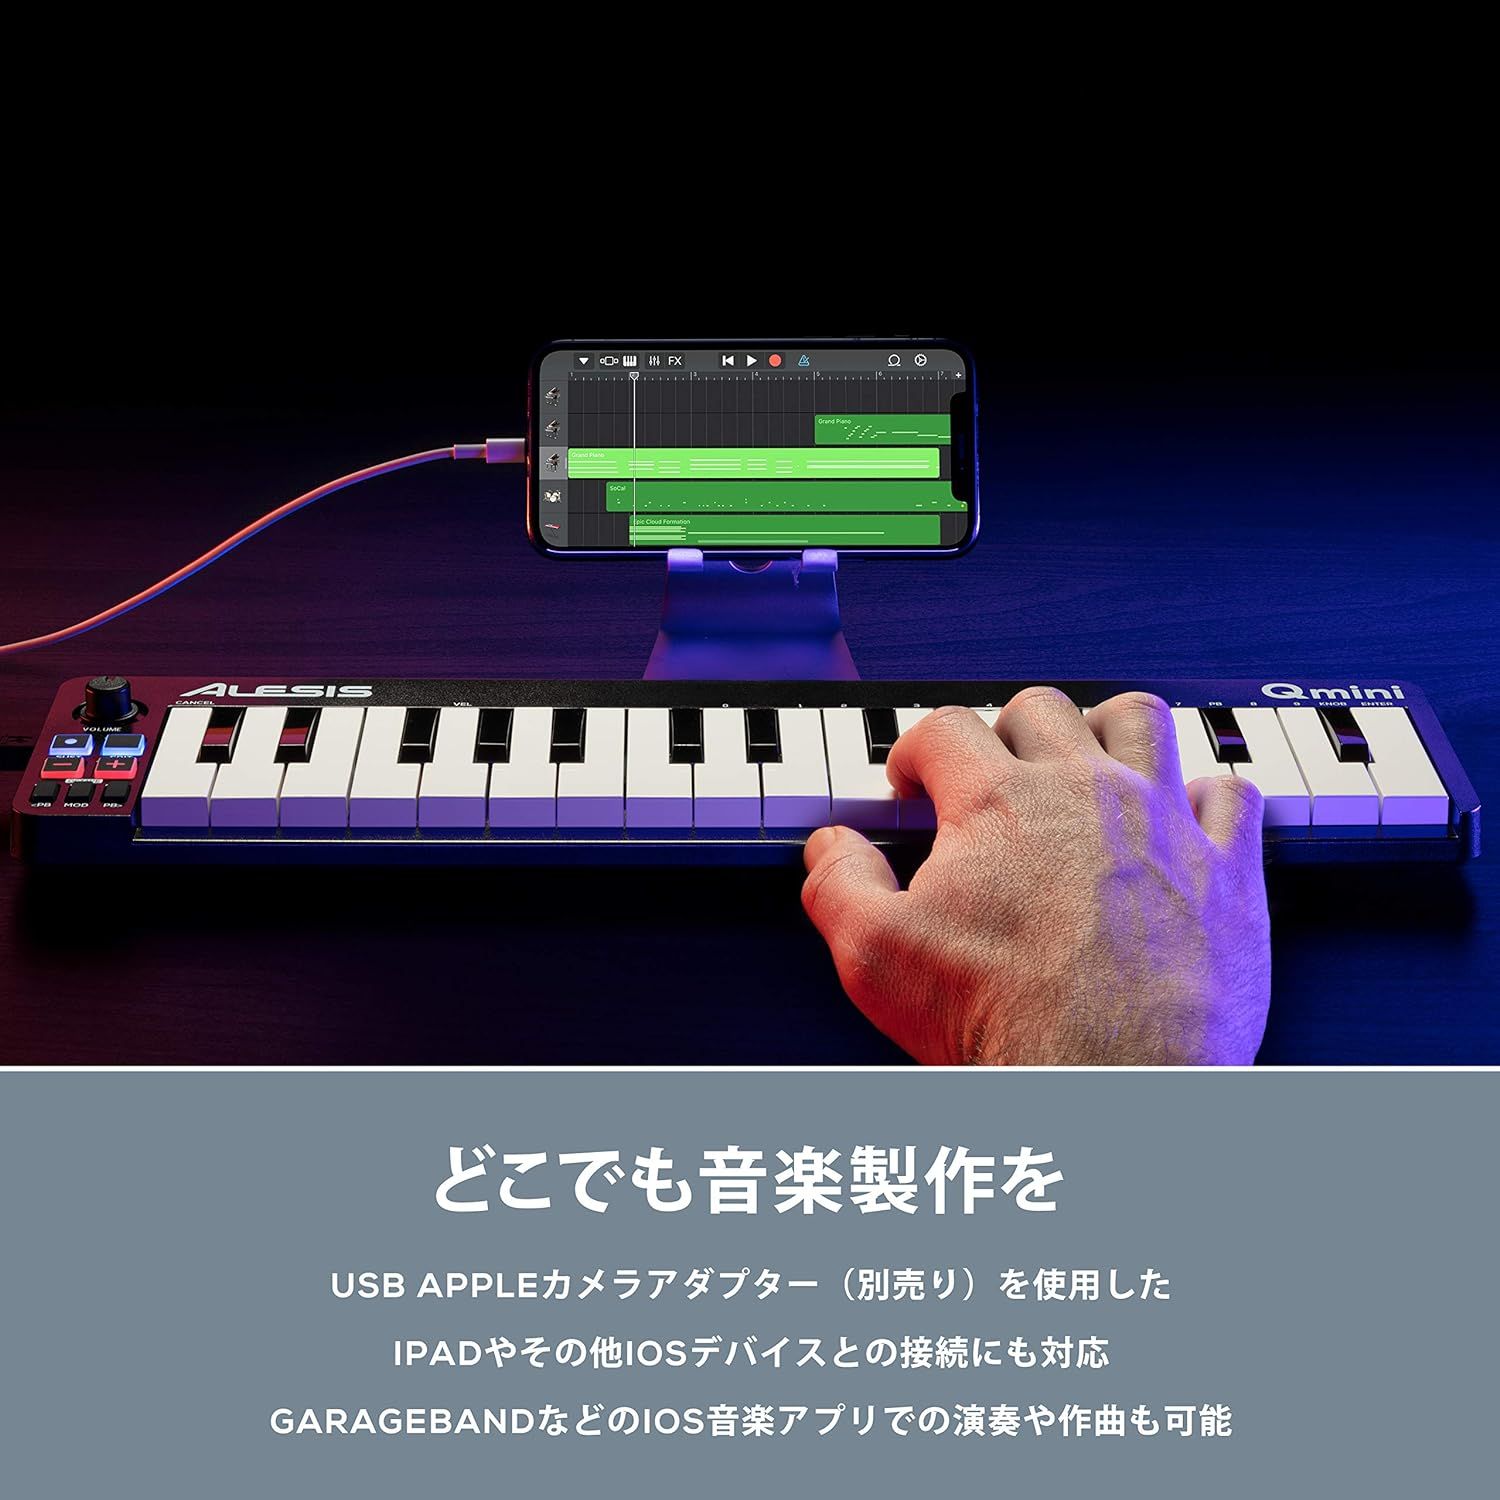 未使用★Alesis MIDIキーボード Qmini USBコントローラー 32鍵 ベロシティ対応 音楽製作 リプロス DTM DAW 送料無料